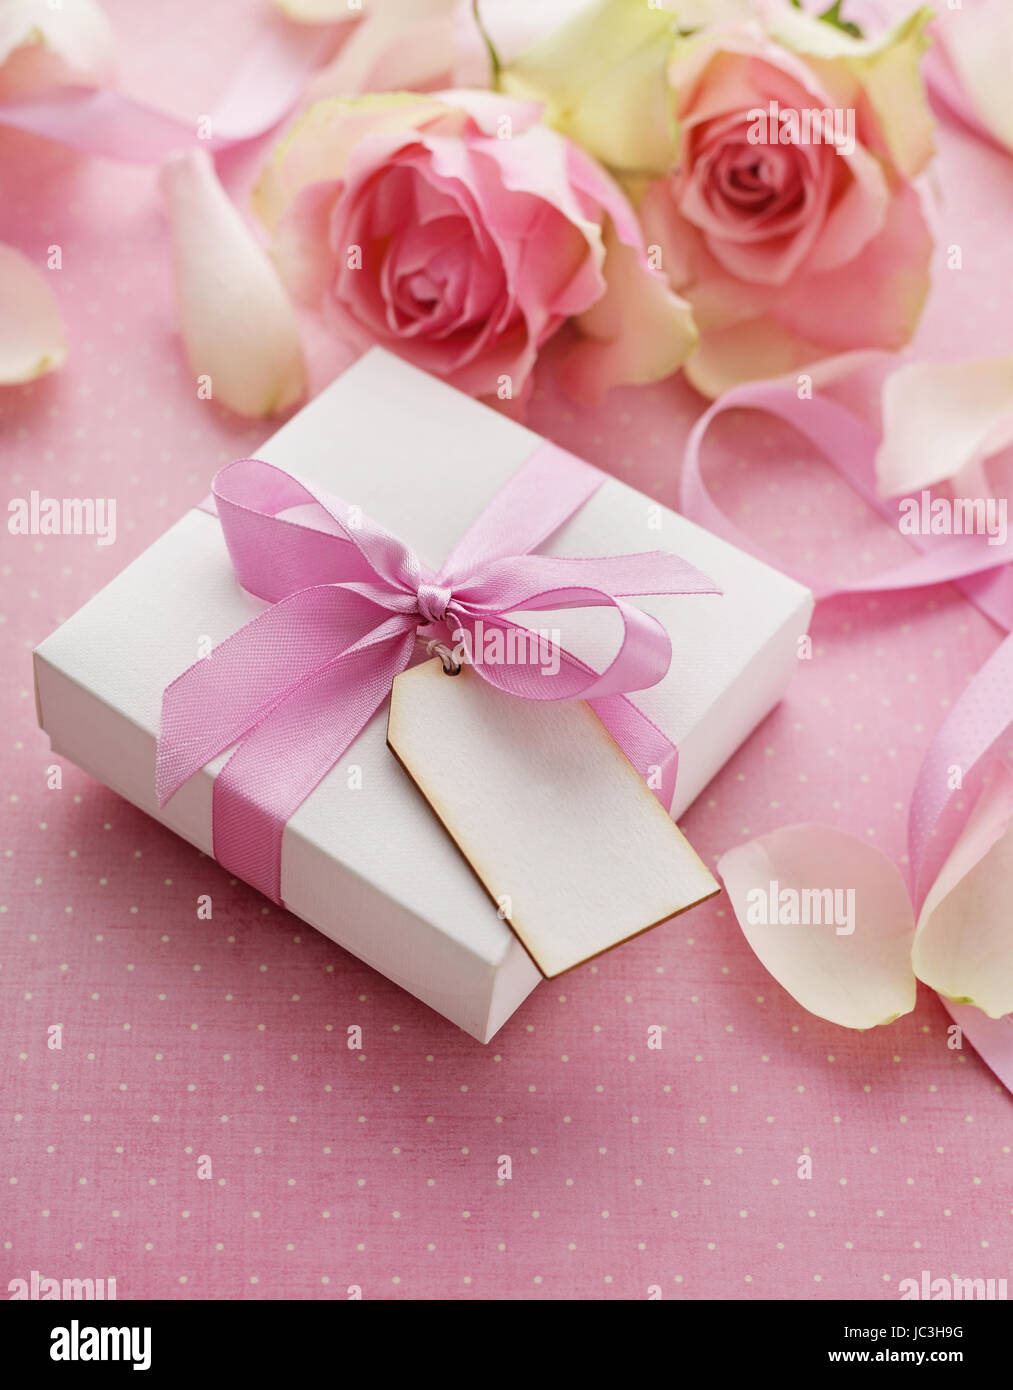 Boîte-cadeau attaché avec du ruban rose fleurs rose, bow Banque D'Images